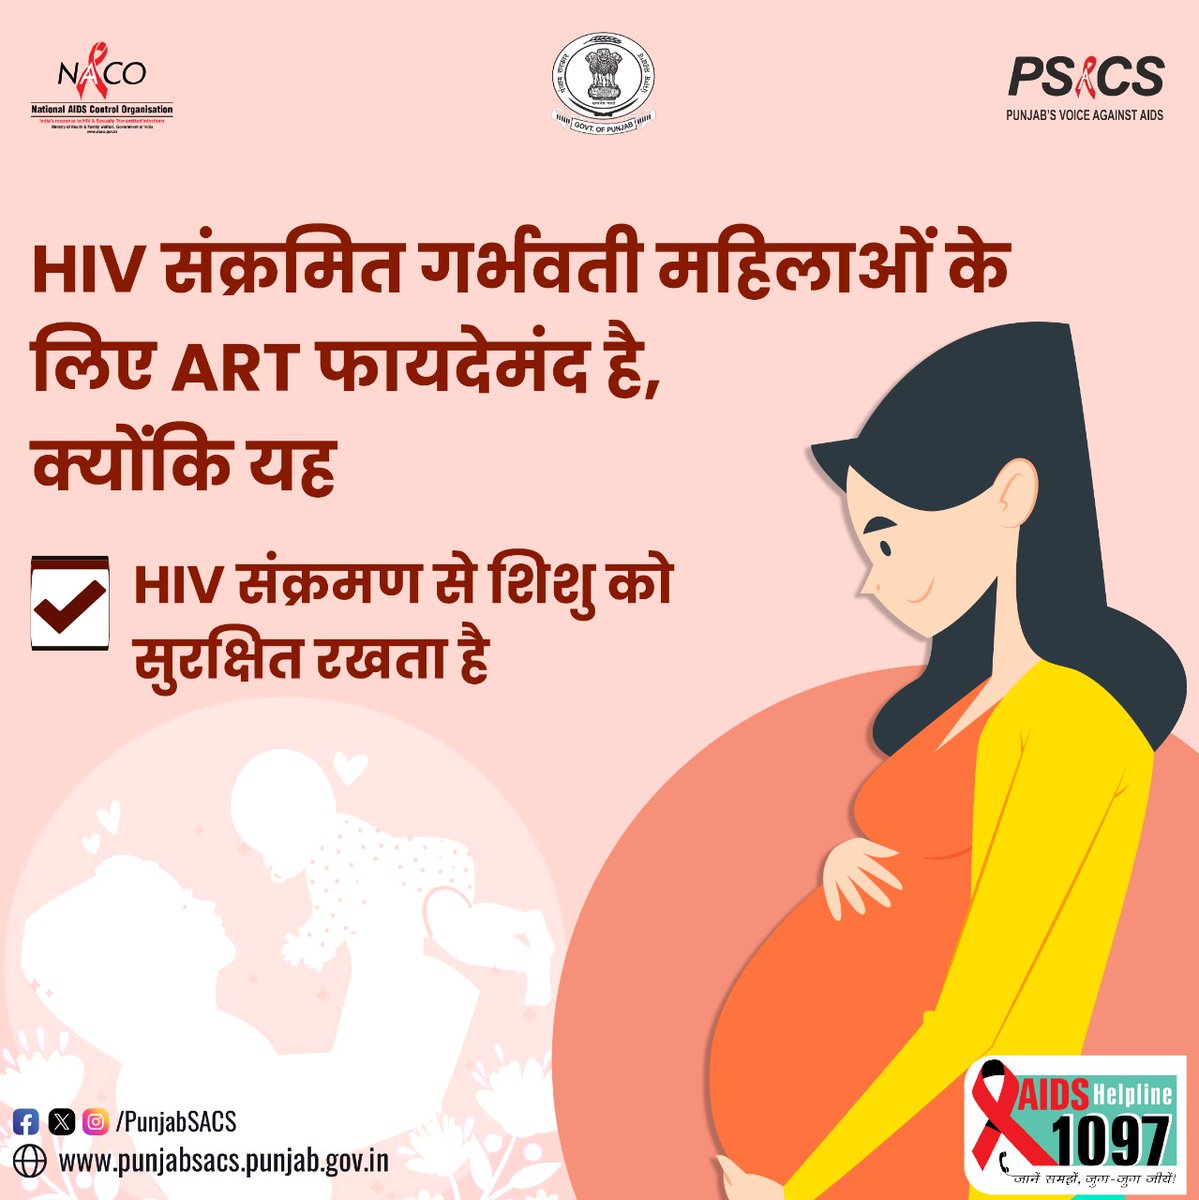 HIV संक्रमित गर्भवती महिलाओं के लिए ART फायदेमंद है, क्योंकि यह HIV संक्रमण से शिशु को सुरक्षित रखता है!

#HIVTesting #GetTested #KnowYourHIVStatus #Dial1097 #KnowAIDS #HIVTestingisImportant #KnowHIV #HIVFreeIndia #CorrectInformation #NACOINDIA #NACO